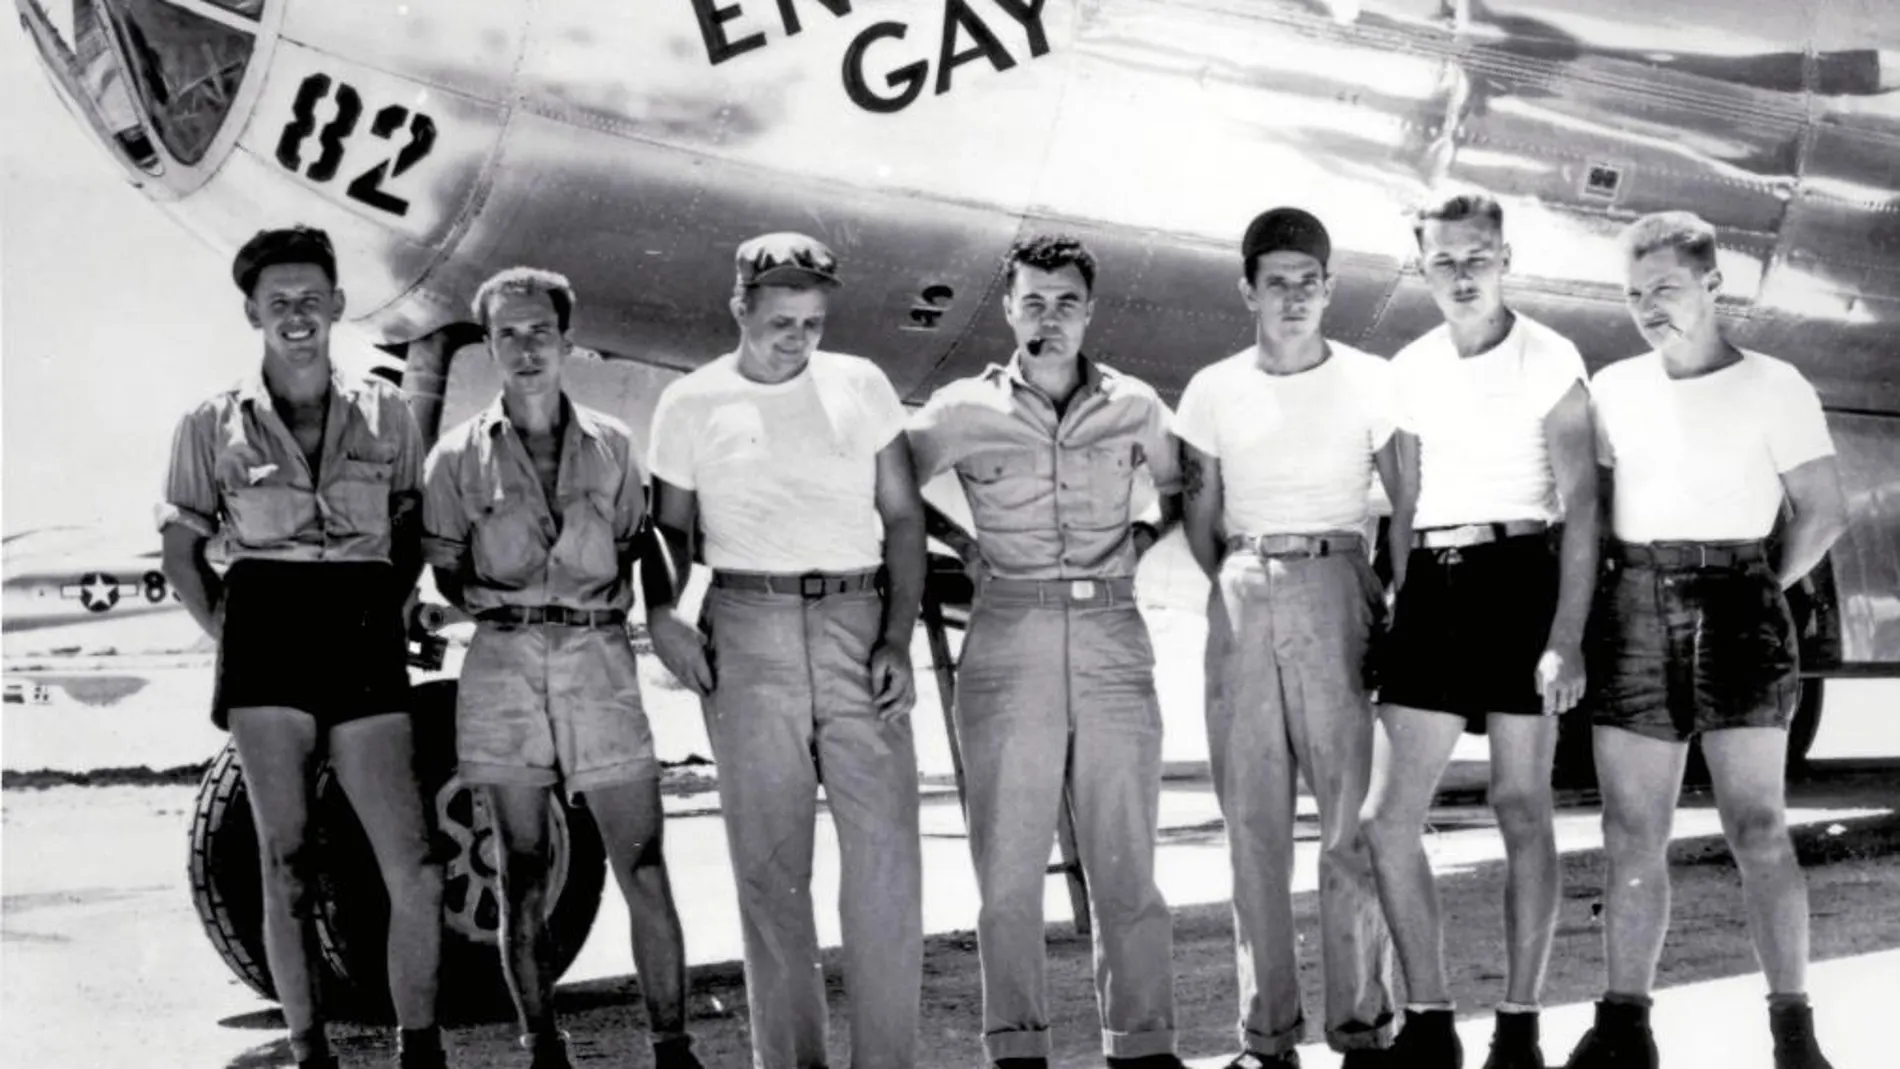 En la foto, la tripulación del «Enola Gay» que bombardeó Hiroshima. Grossman describe en un relato la misión de unos soldados a los que se les ordena lanzar la bomba atómica sobre Japón